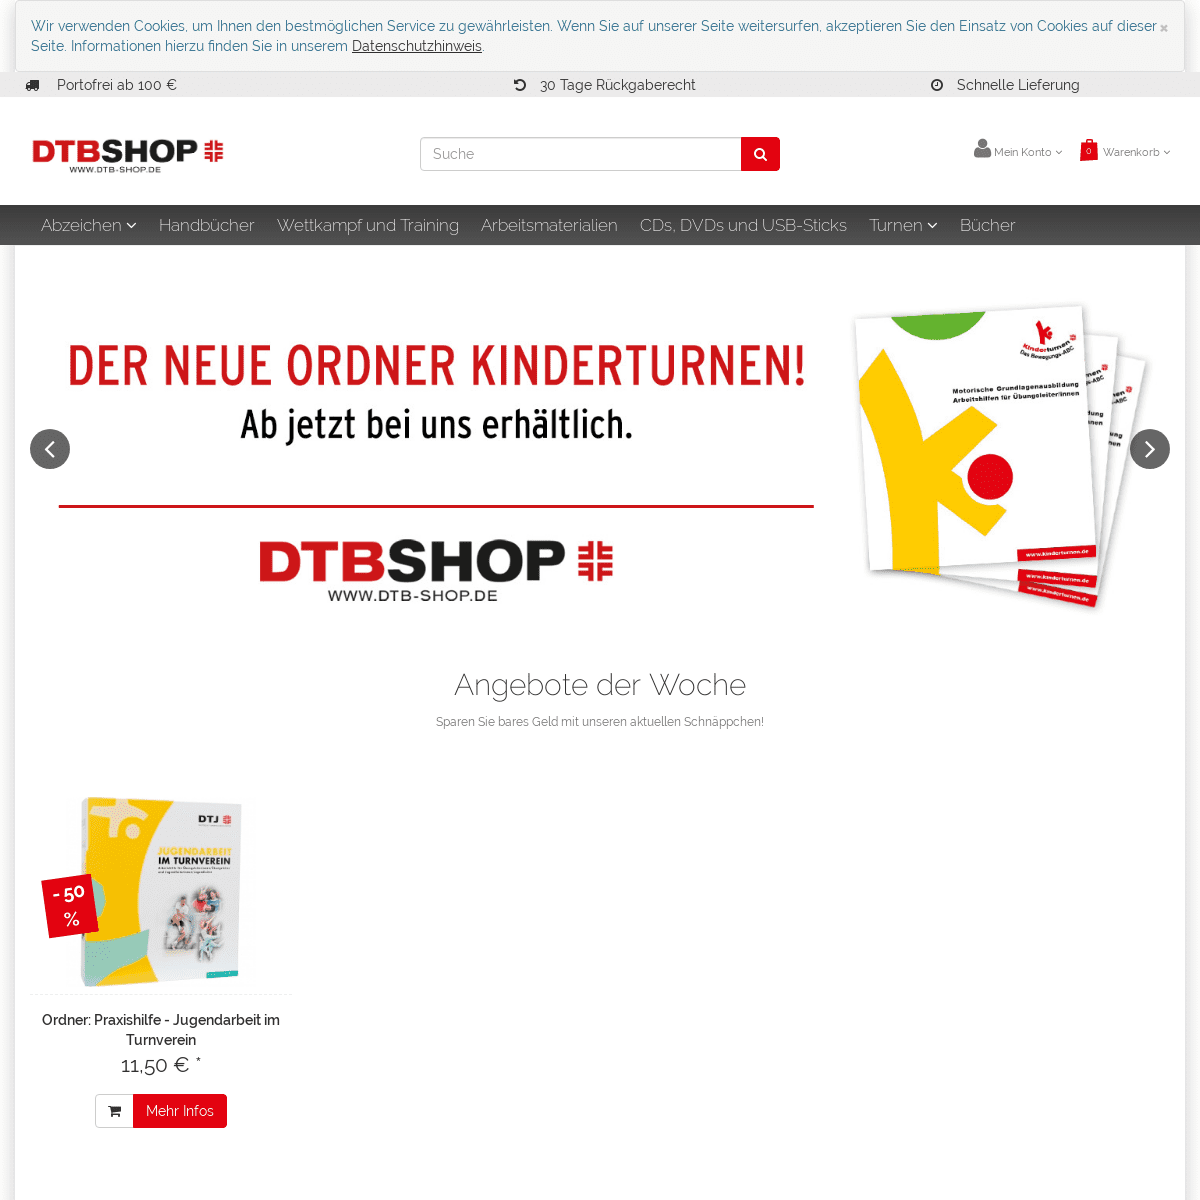 A complete backup of dtb-shop.de